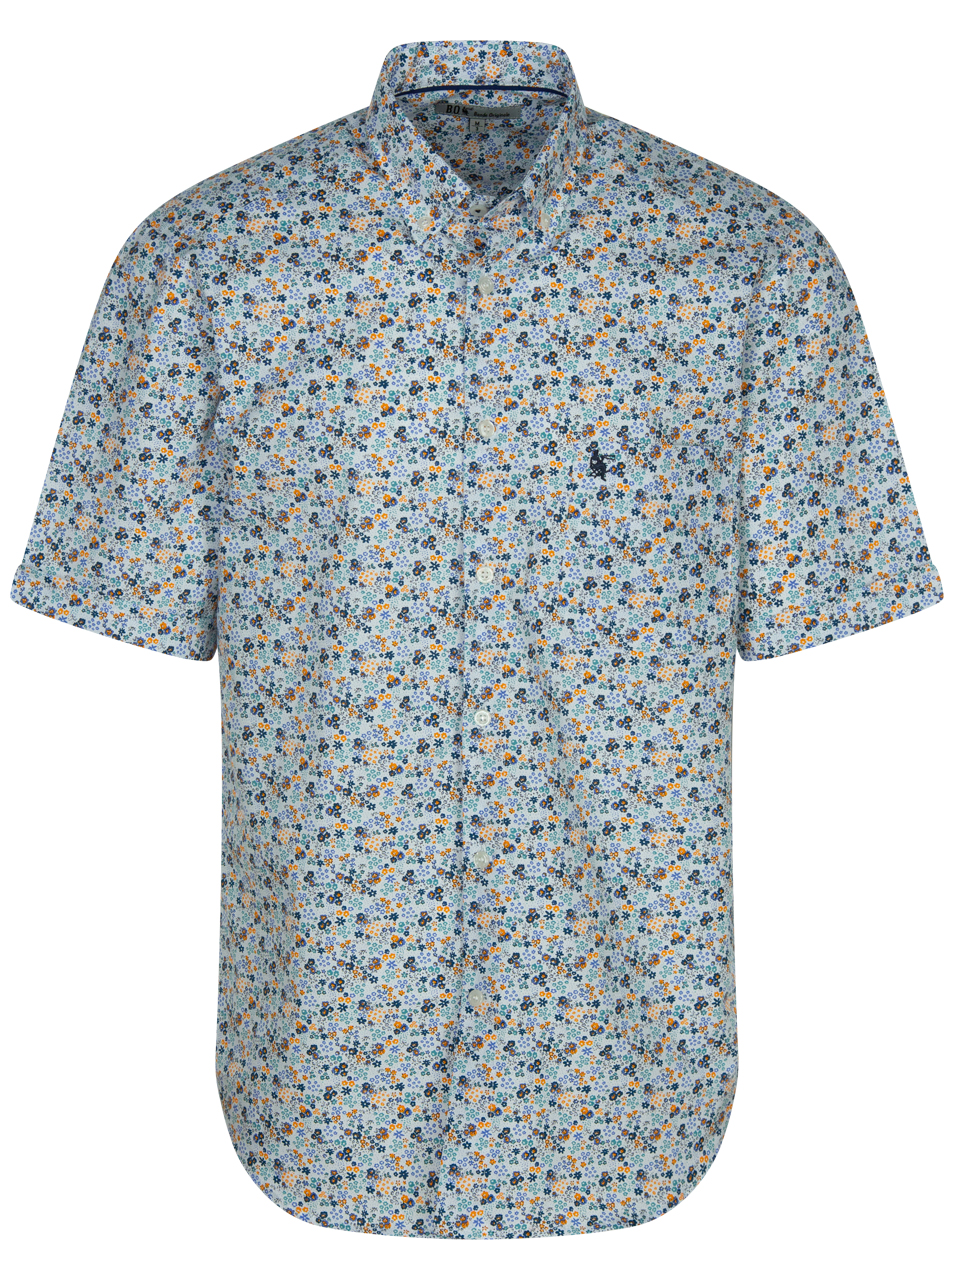 Chemise grande taille Bande Originale en coton multicolore avec manches courtes et col américain